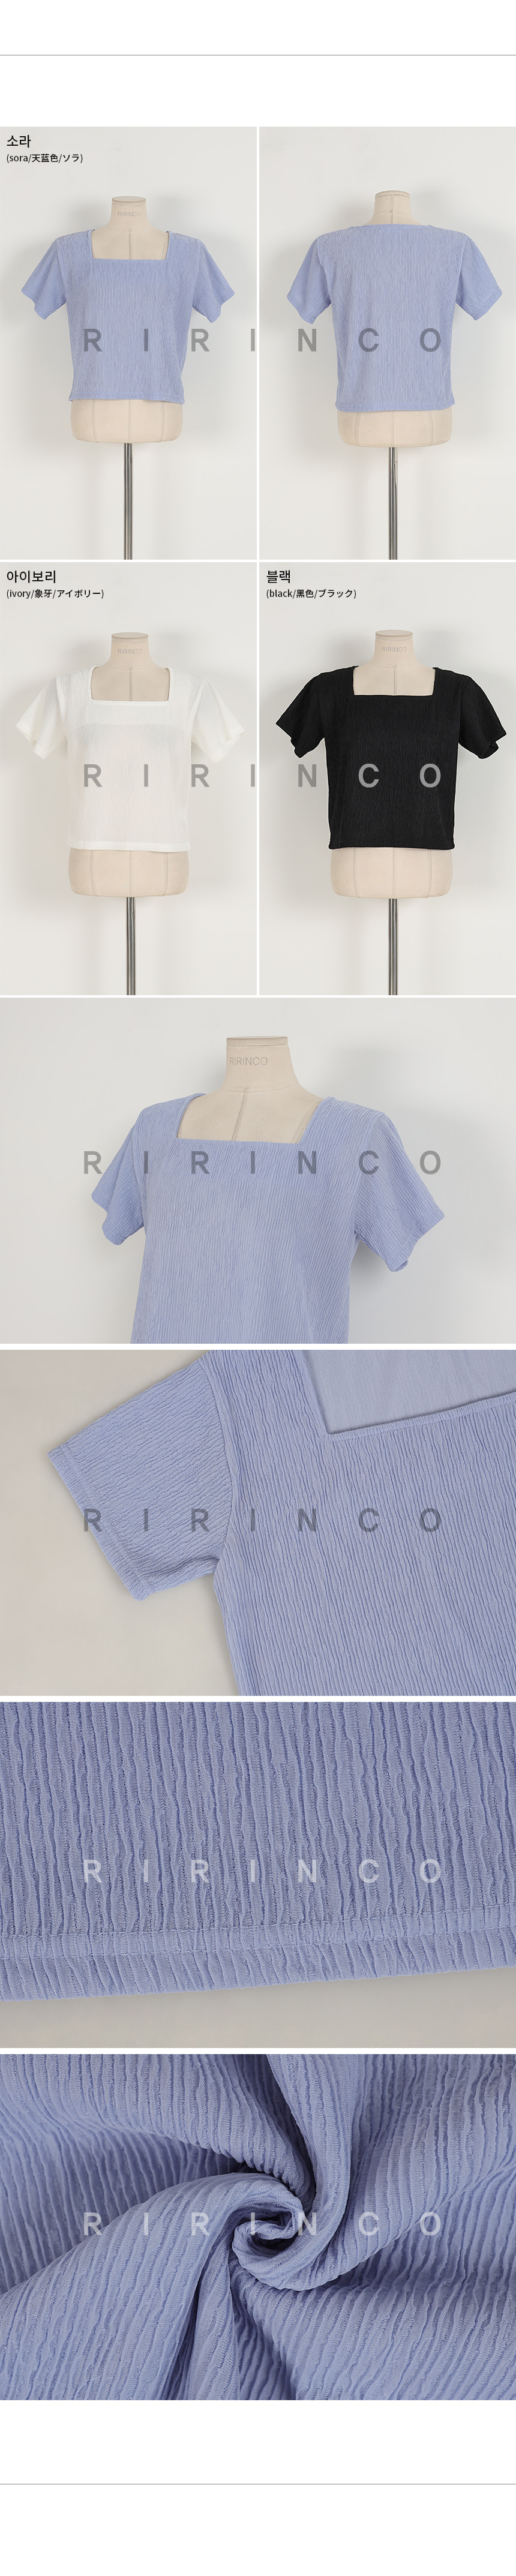 리리앤코 렝키 링클 스퀘어넥 티셔츠